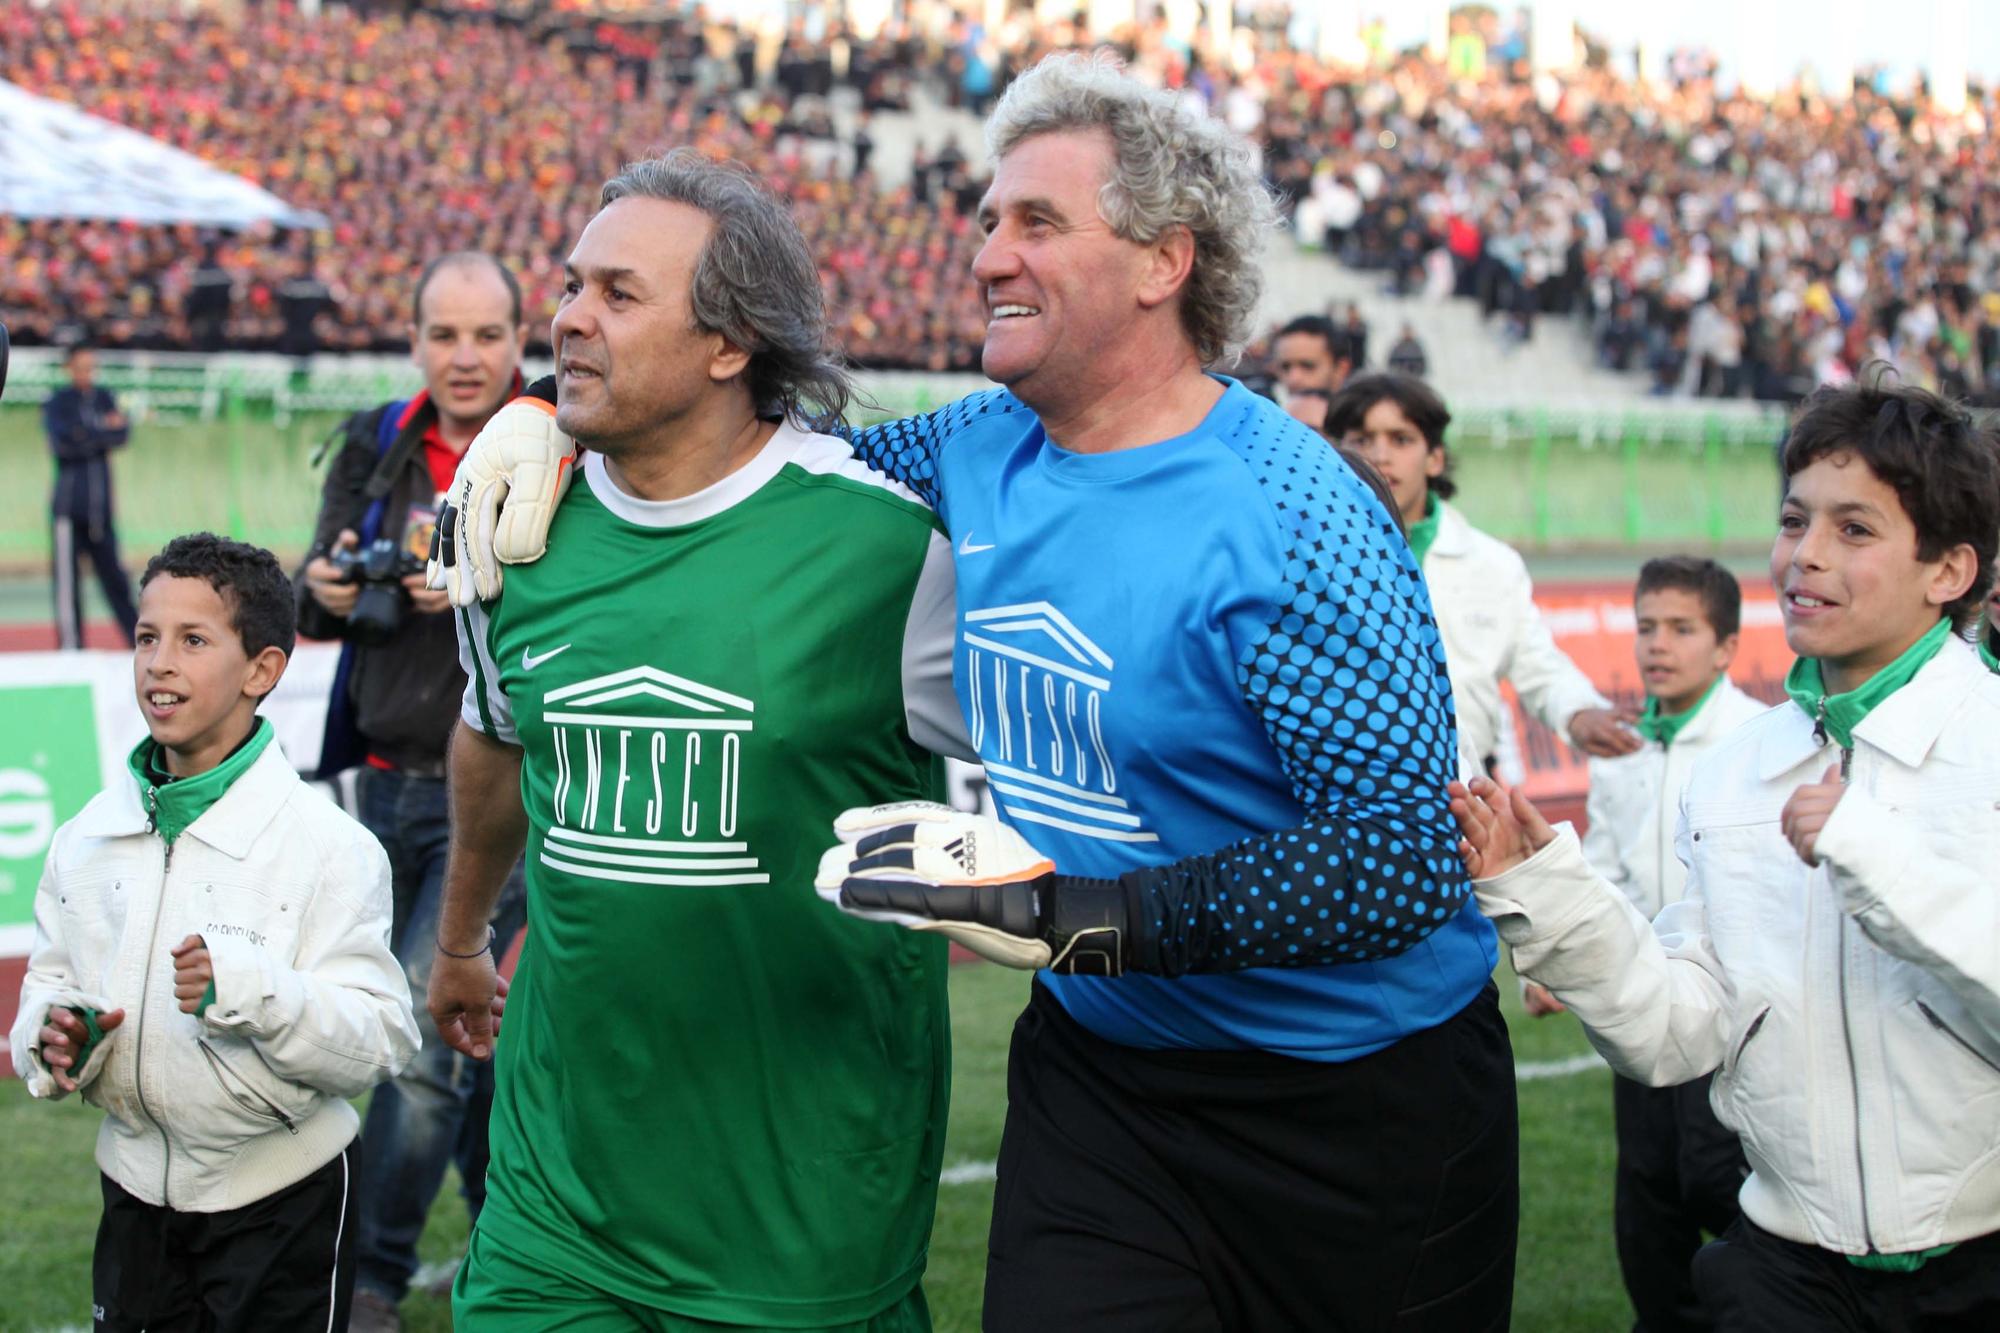 Ambassadeur de l'Unesco, Madjer organise notamment des matches de charité. Ici en 2012 aux côtés du Belge Jean-Marie Pfaff. [AFP - Billel Zehani]